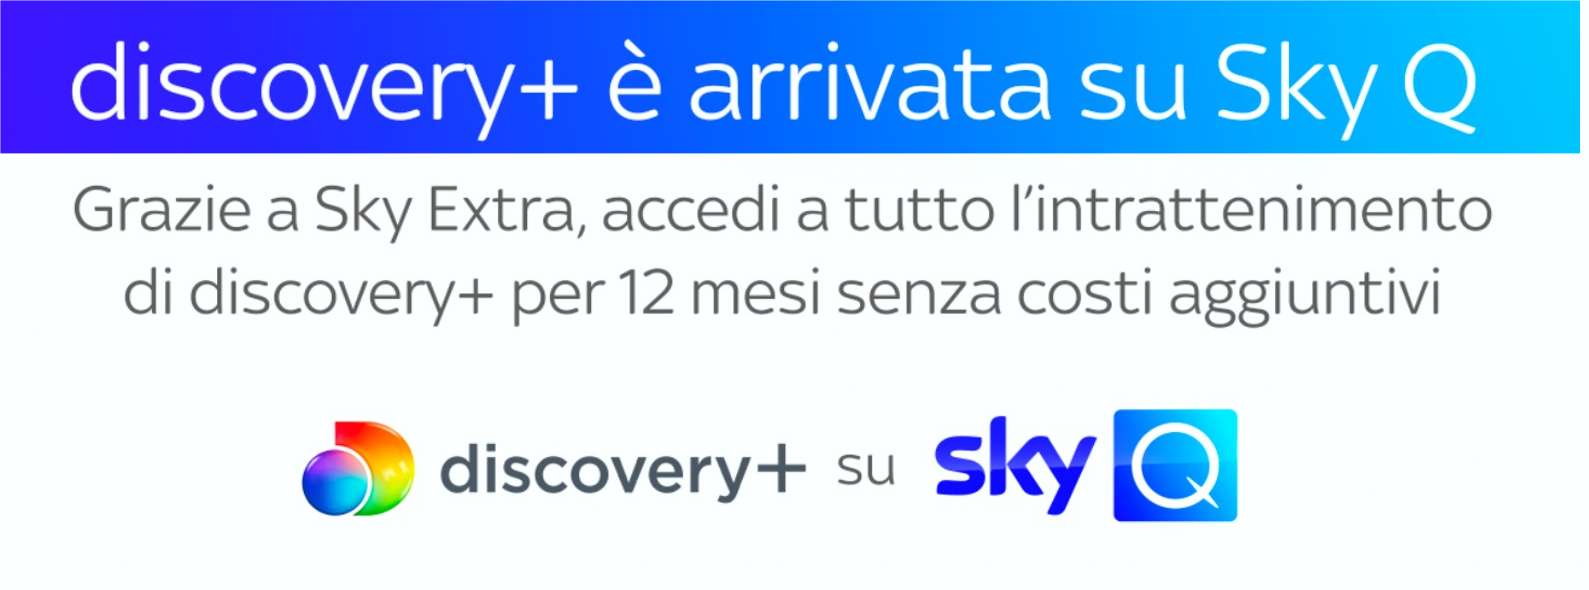 Discovery+ arriva su Sky Q con 12 mesi di Intrattenimento senza costi aggiuntivi